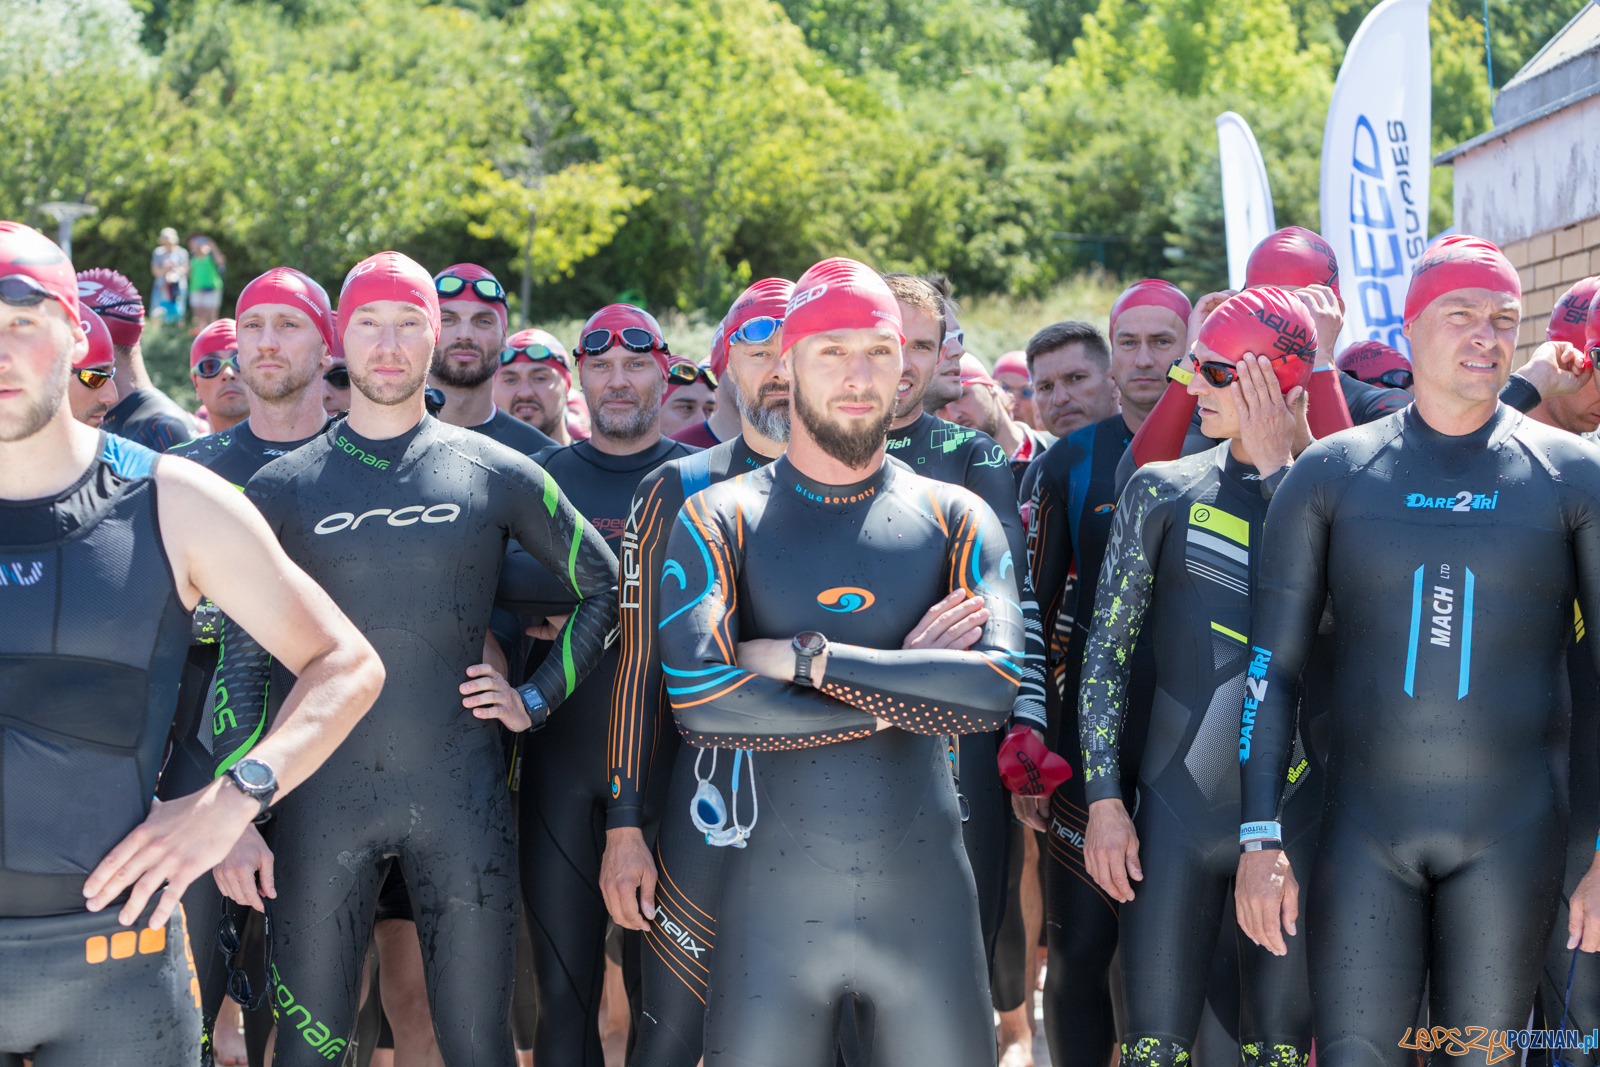 Super League Triathlon - dystans ¼ i sztafety  Foto: lepszyPOZNAN.pl/Piotr Rychter